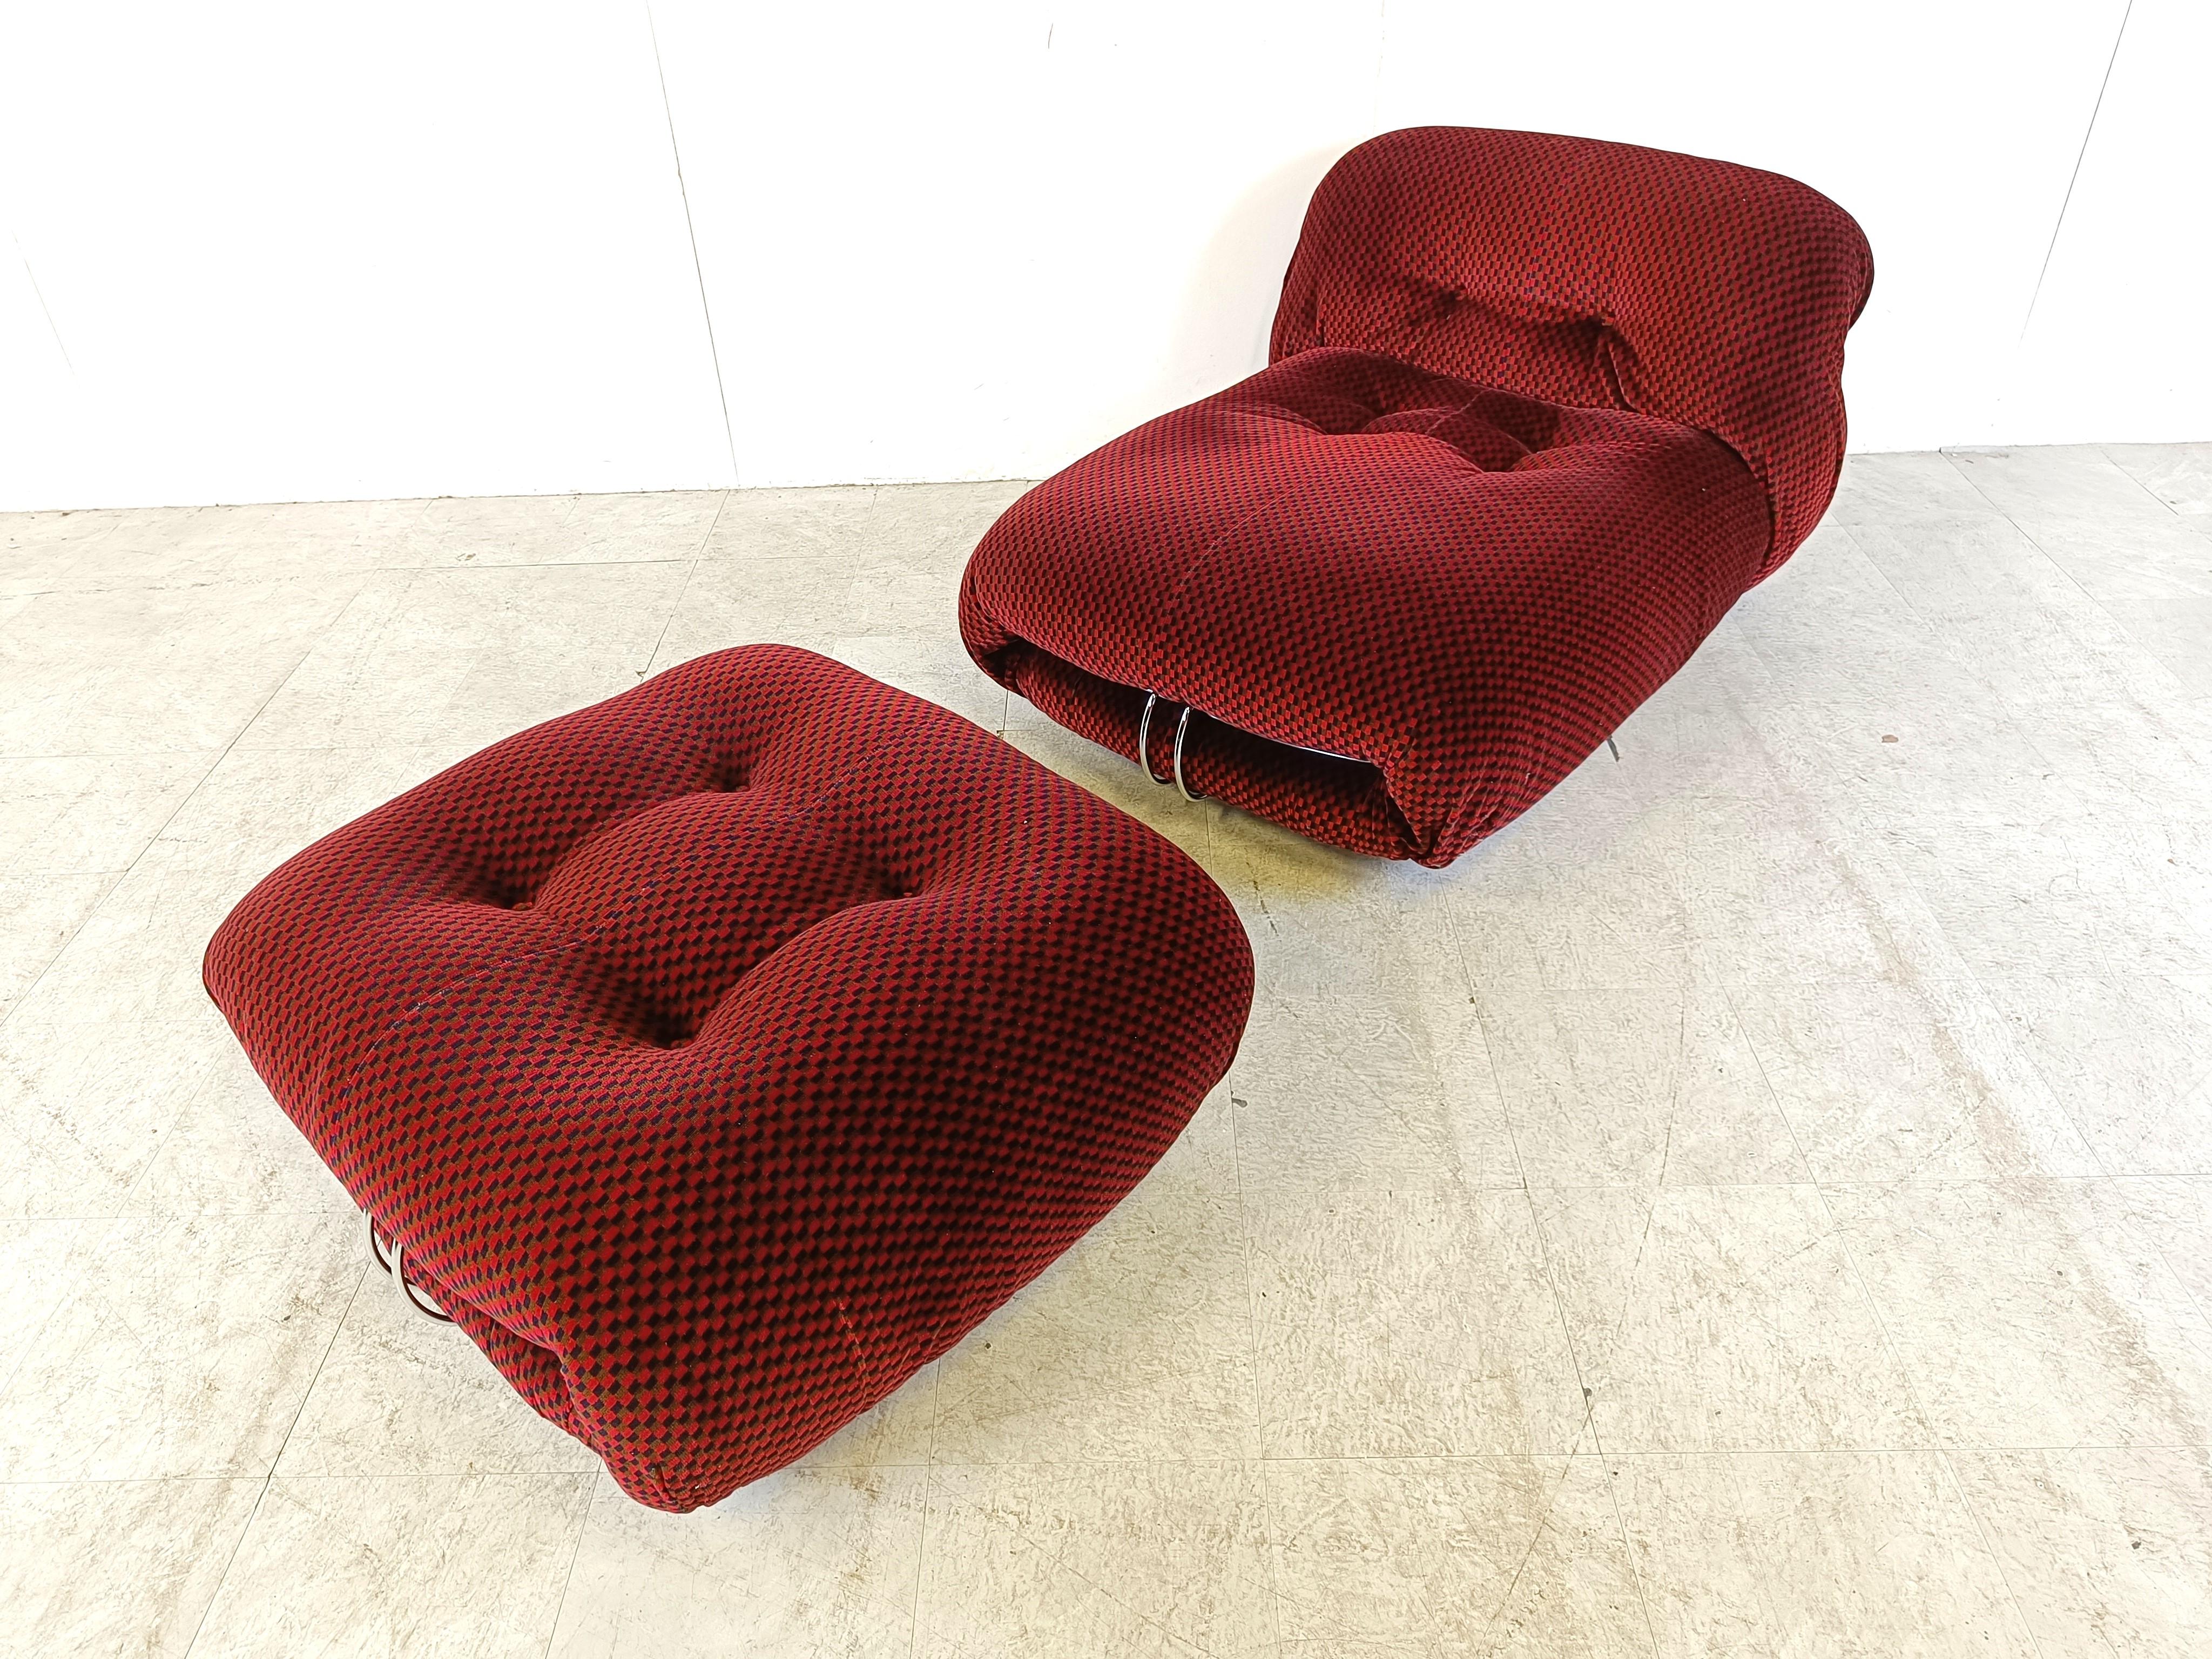 Sehr seltener Soriana Sessel mit Ottomane, entworfen 1969 von Afra & Tobia Scarpa für Cassina.

Die Polsterung aus den siebziger Jahren ist noch intakt.

Wunderschönes und zeitloses Design mit dem richtigen Vintage-Flair.

Sehr komfortabel

Guter